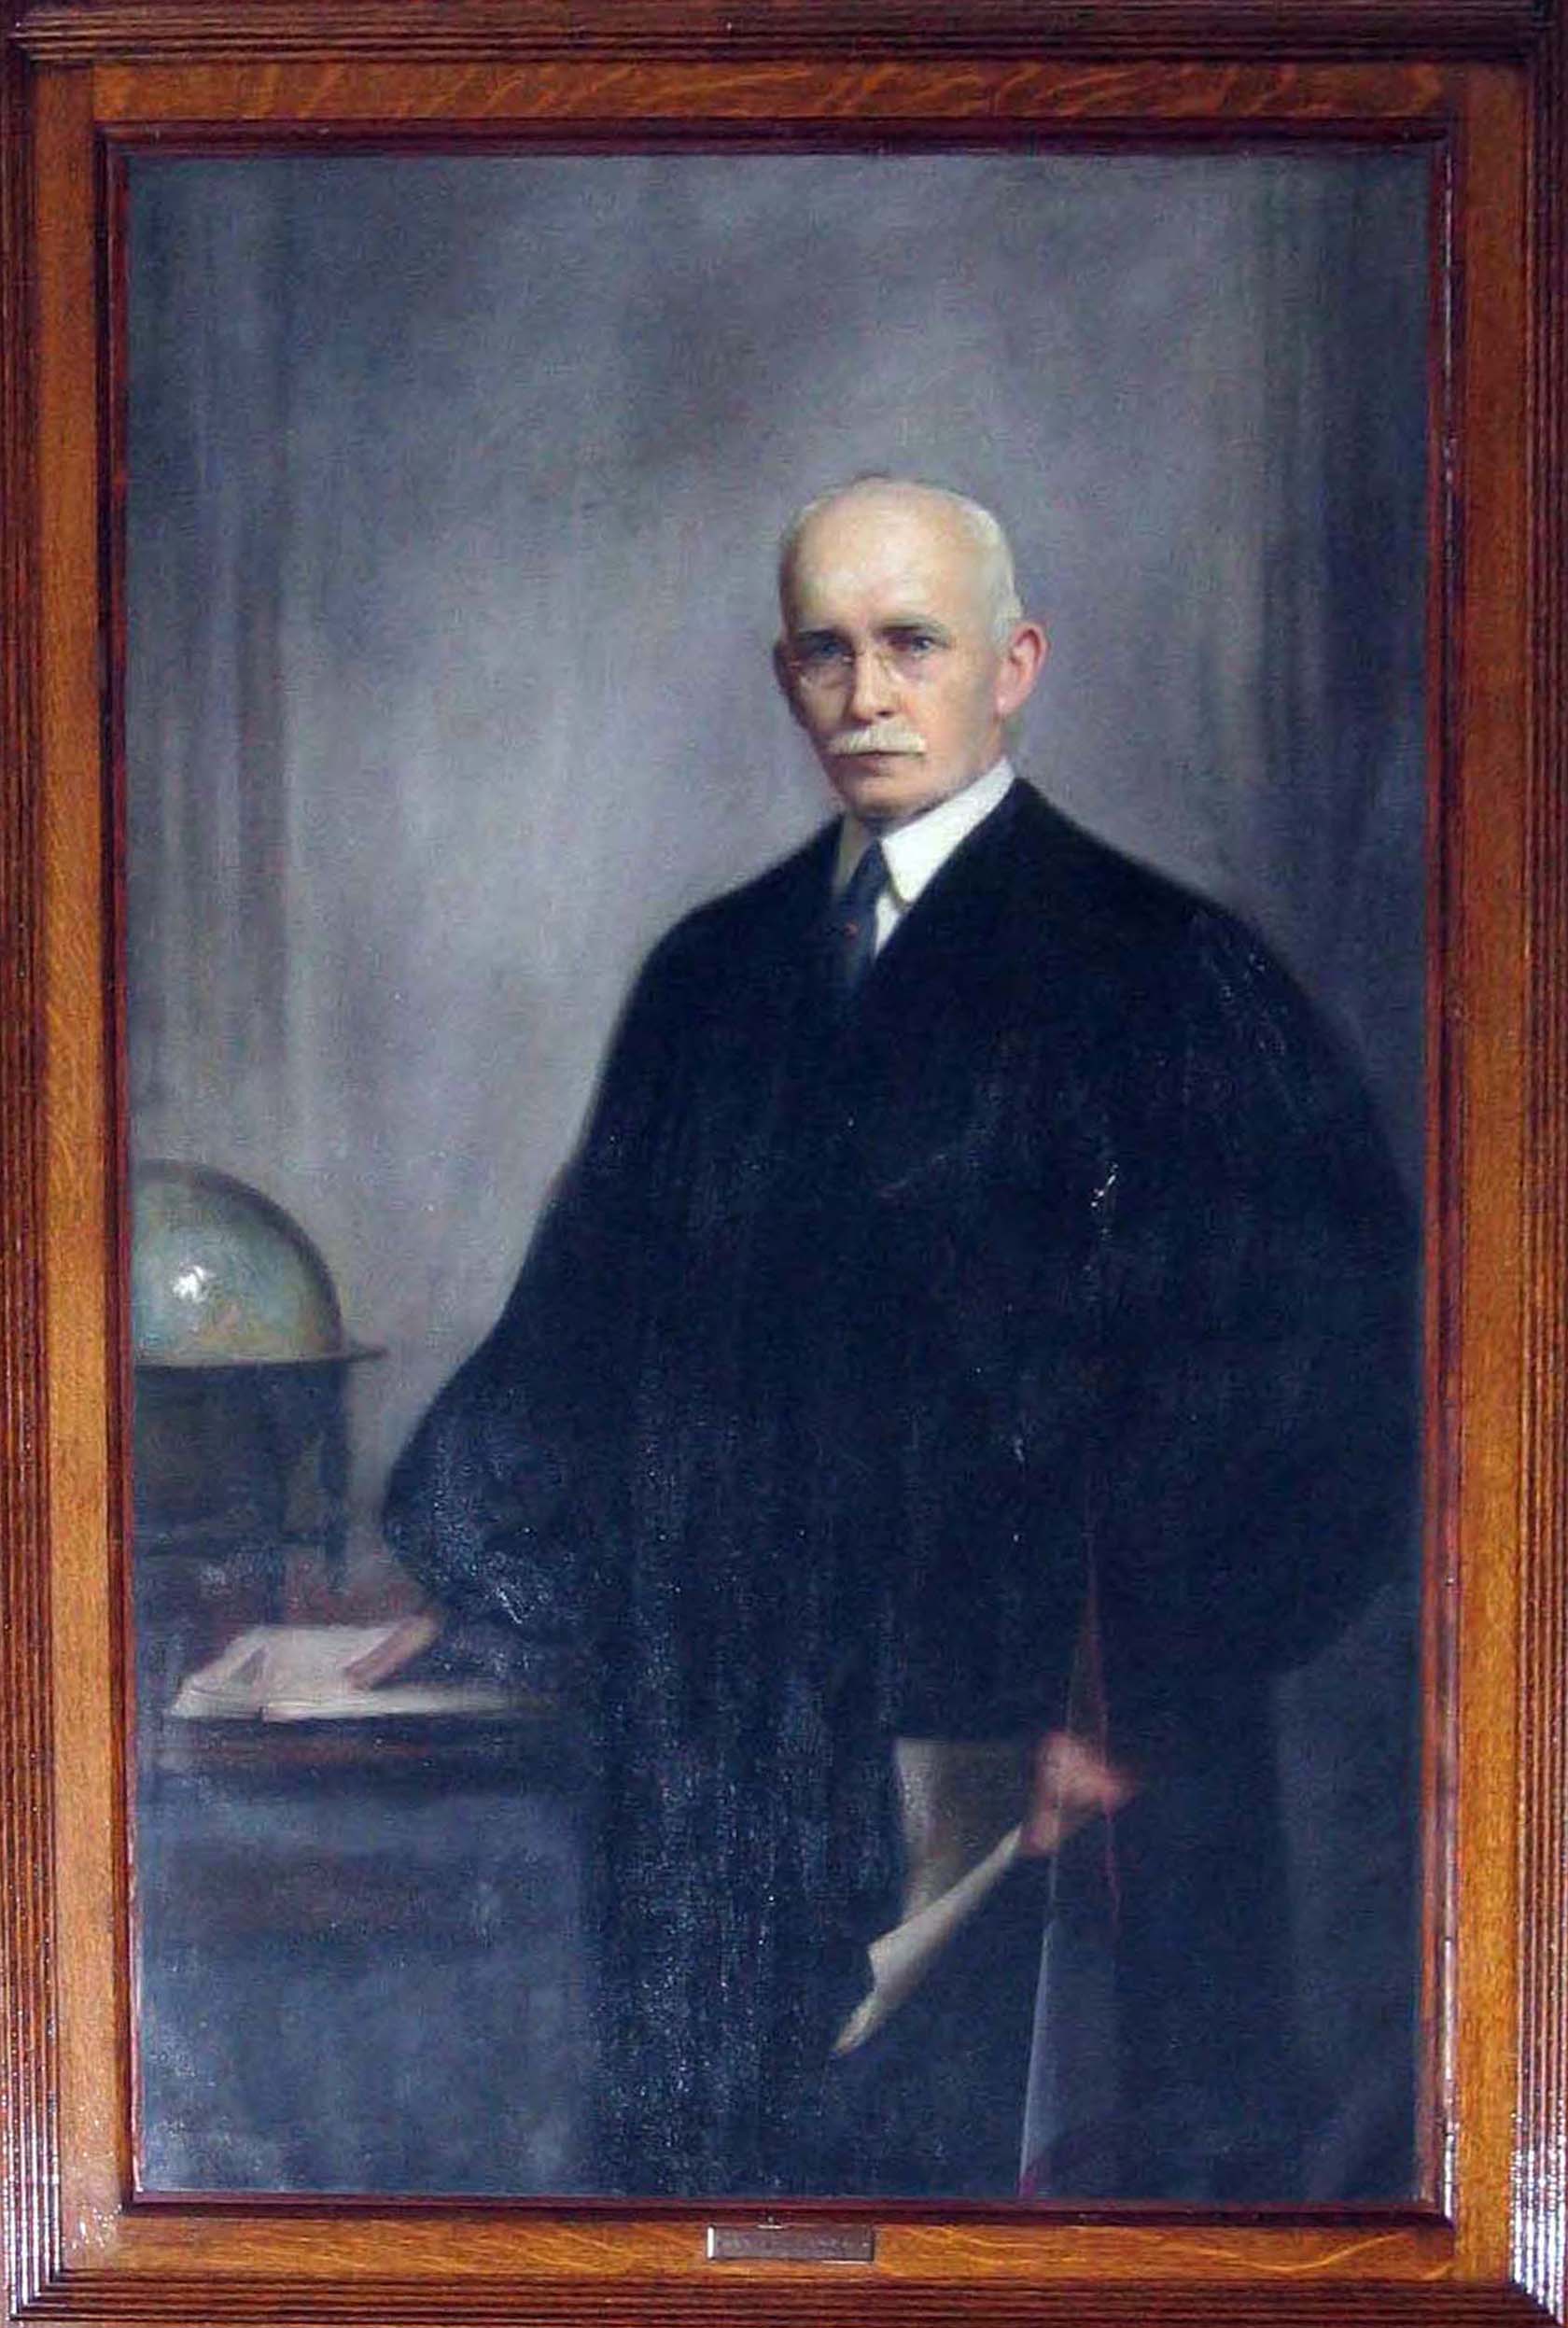 Henry S. Stockbridge, Jr.